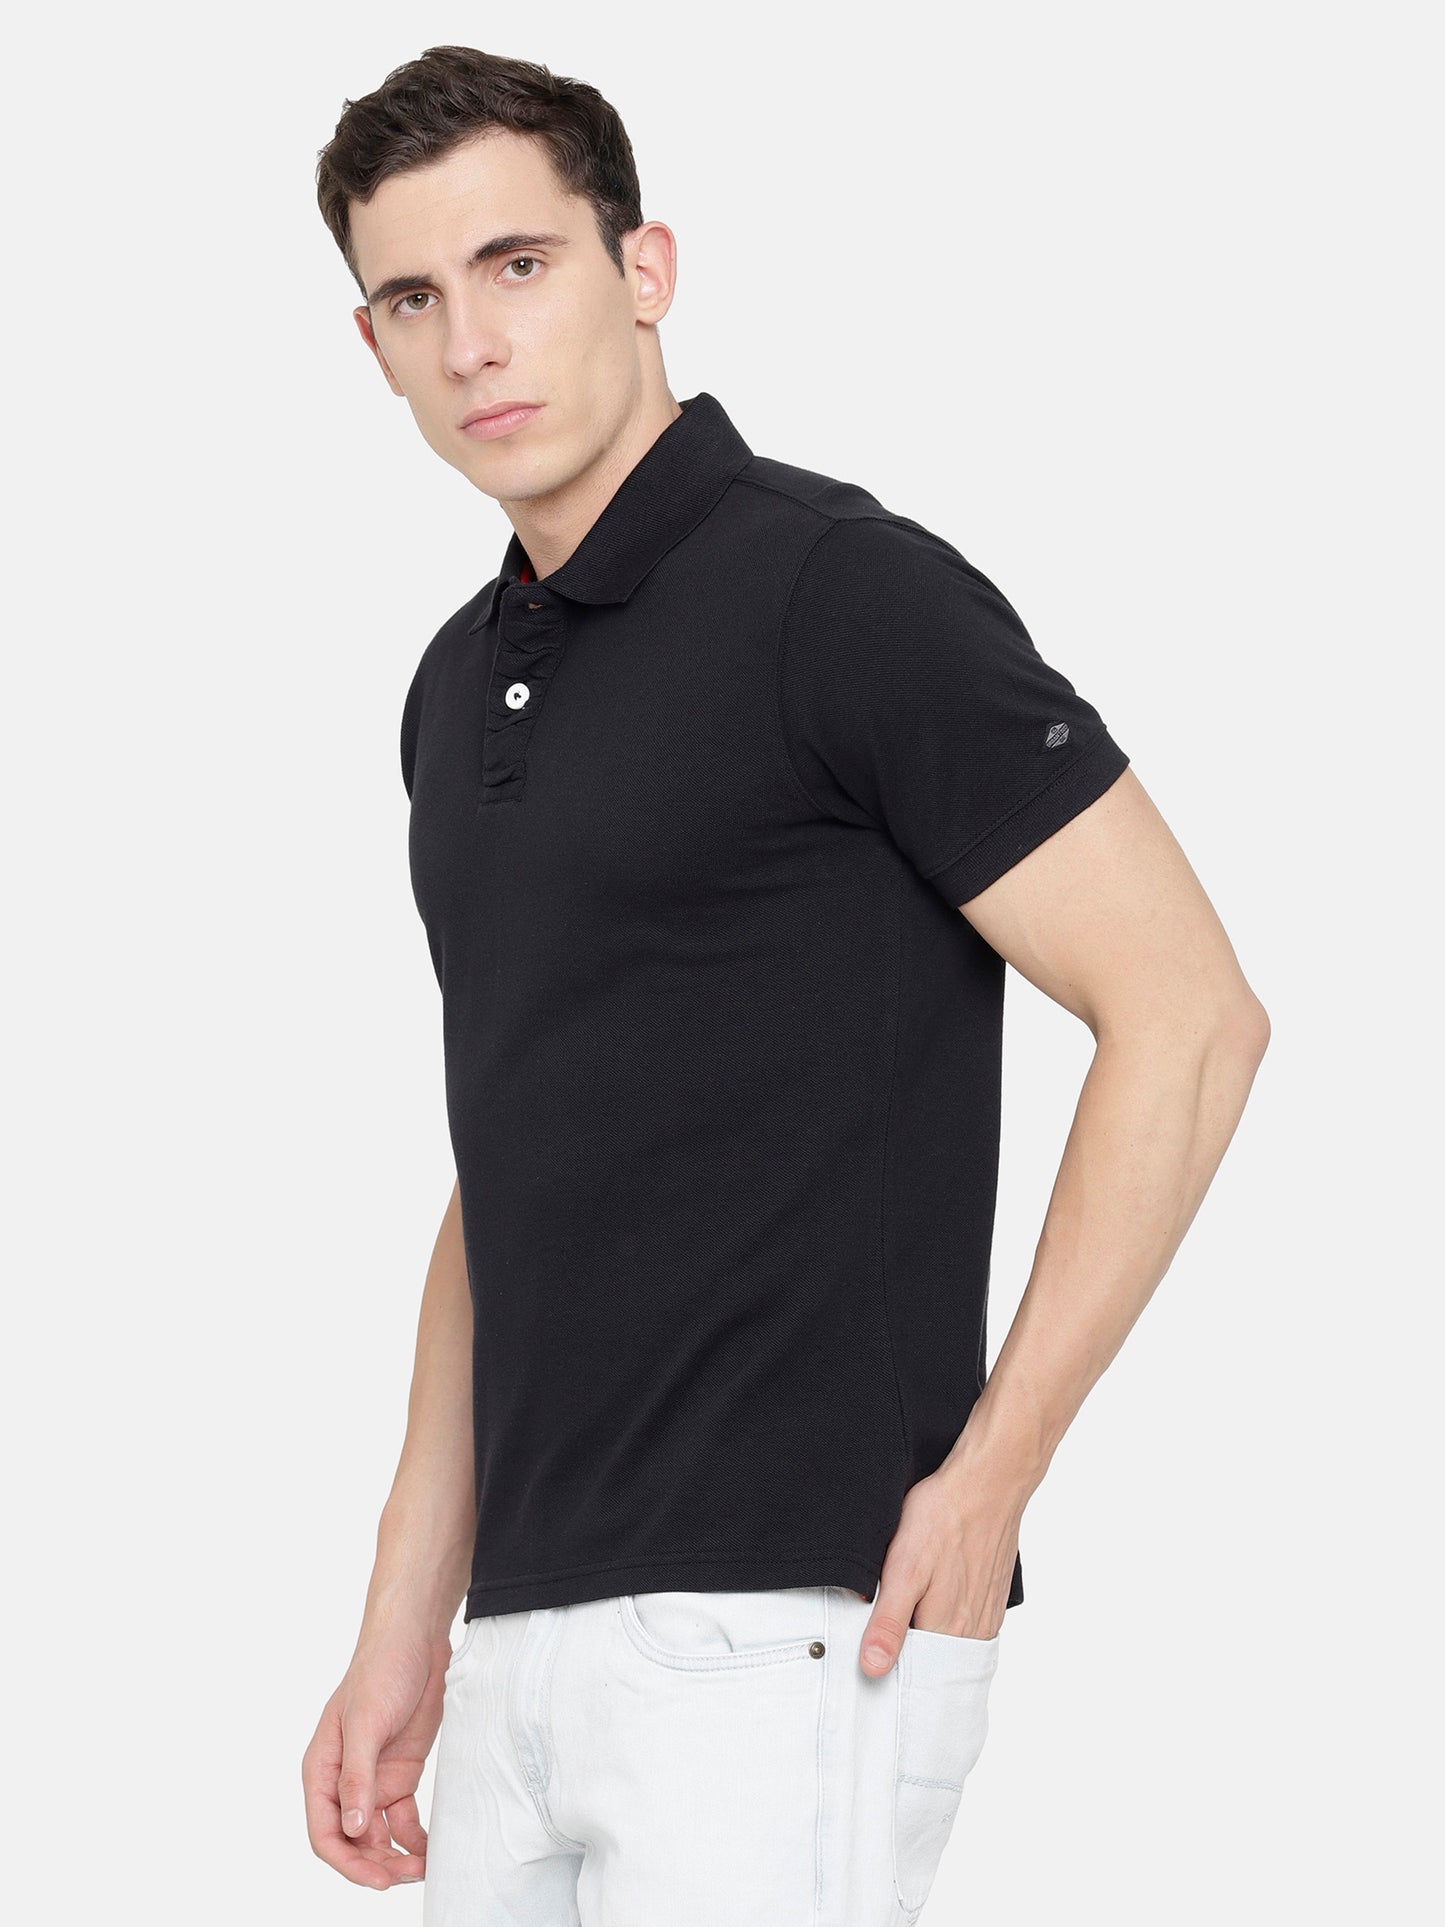 Black Polo T-Shirt pique